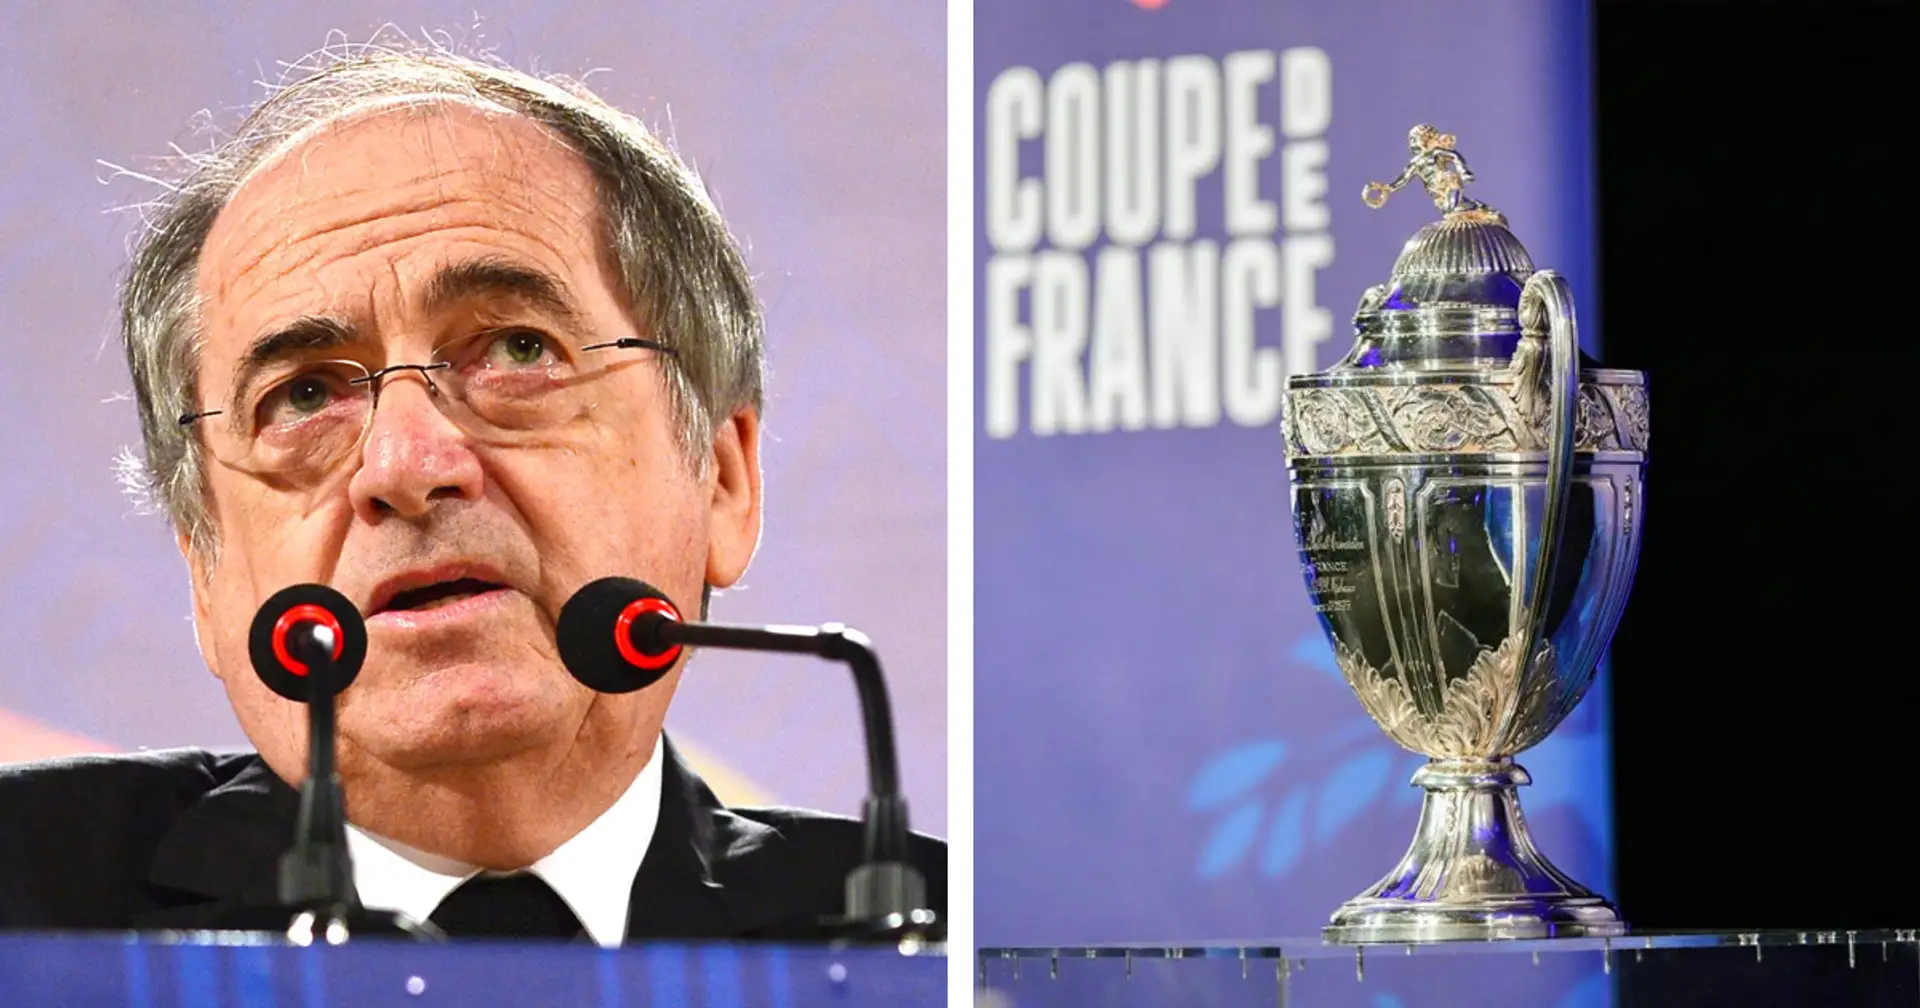 😳 "Quelle annulation ? La Coupe de France aura lieu cette année, c'est sûr!" affirme Noël Le Graët, après avoir suggéré le contraire dimanche